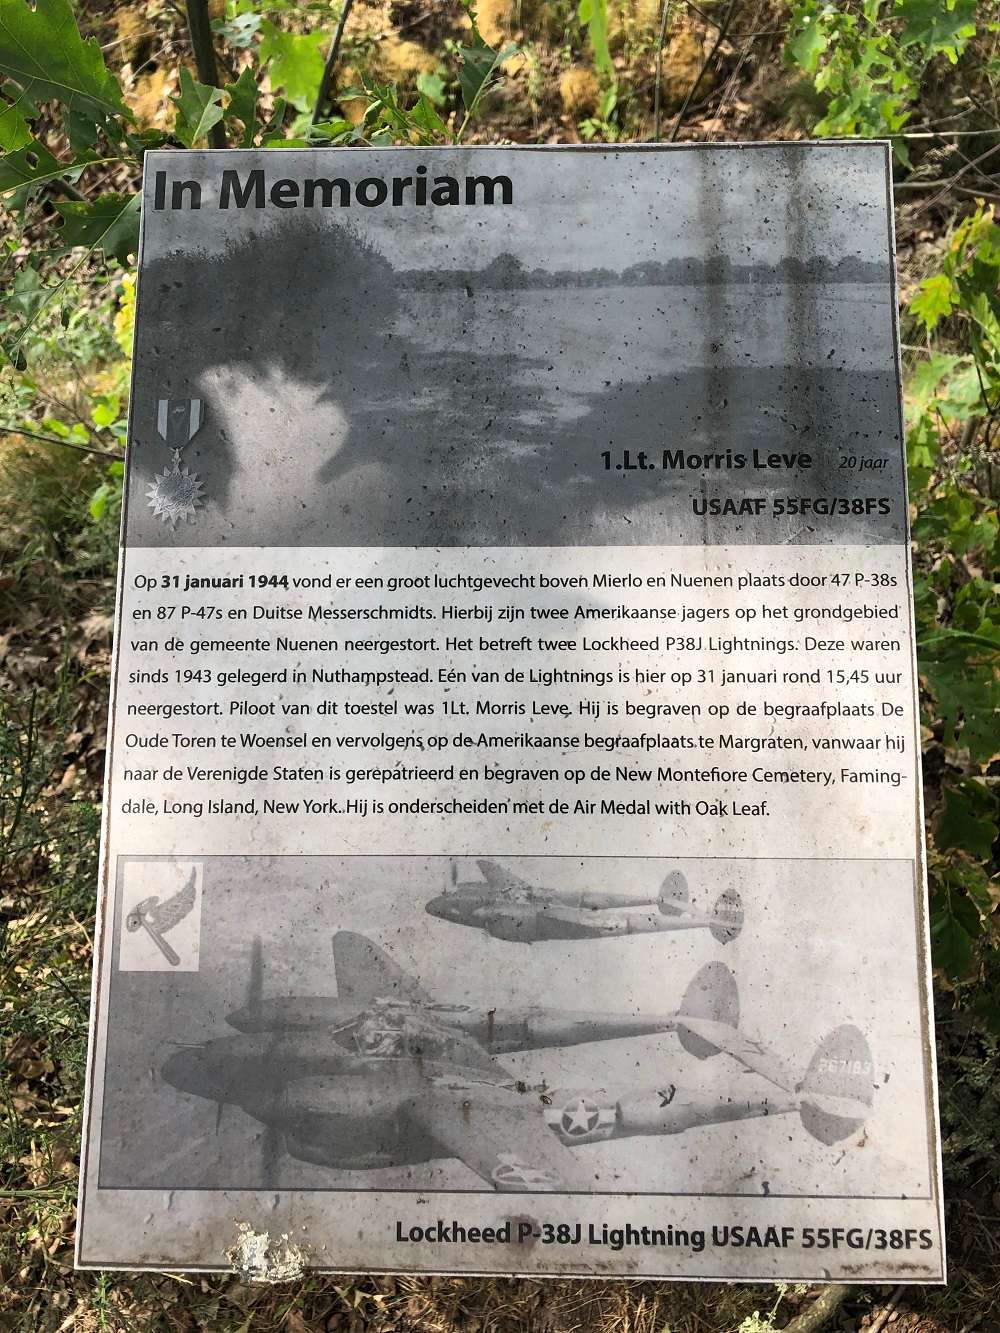 In Memoriam: Crashlocatie P-38 Lightning Lt. Morris Leve #2